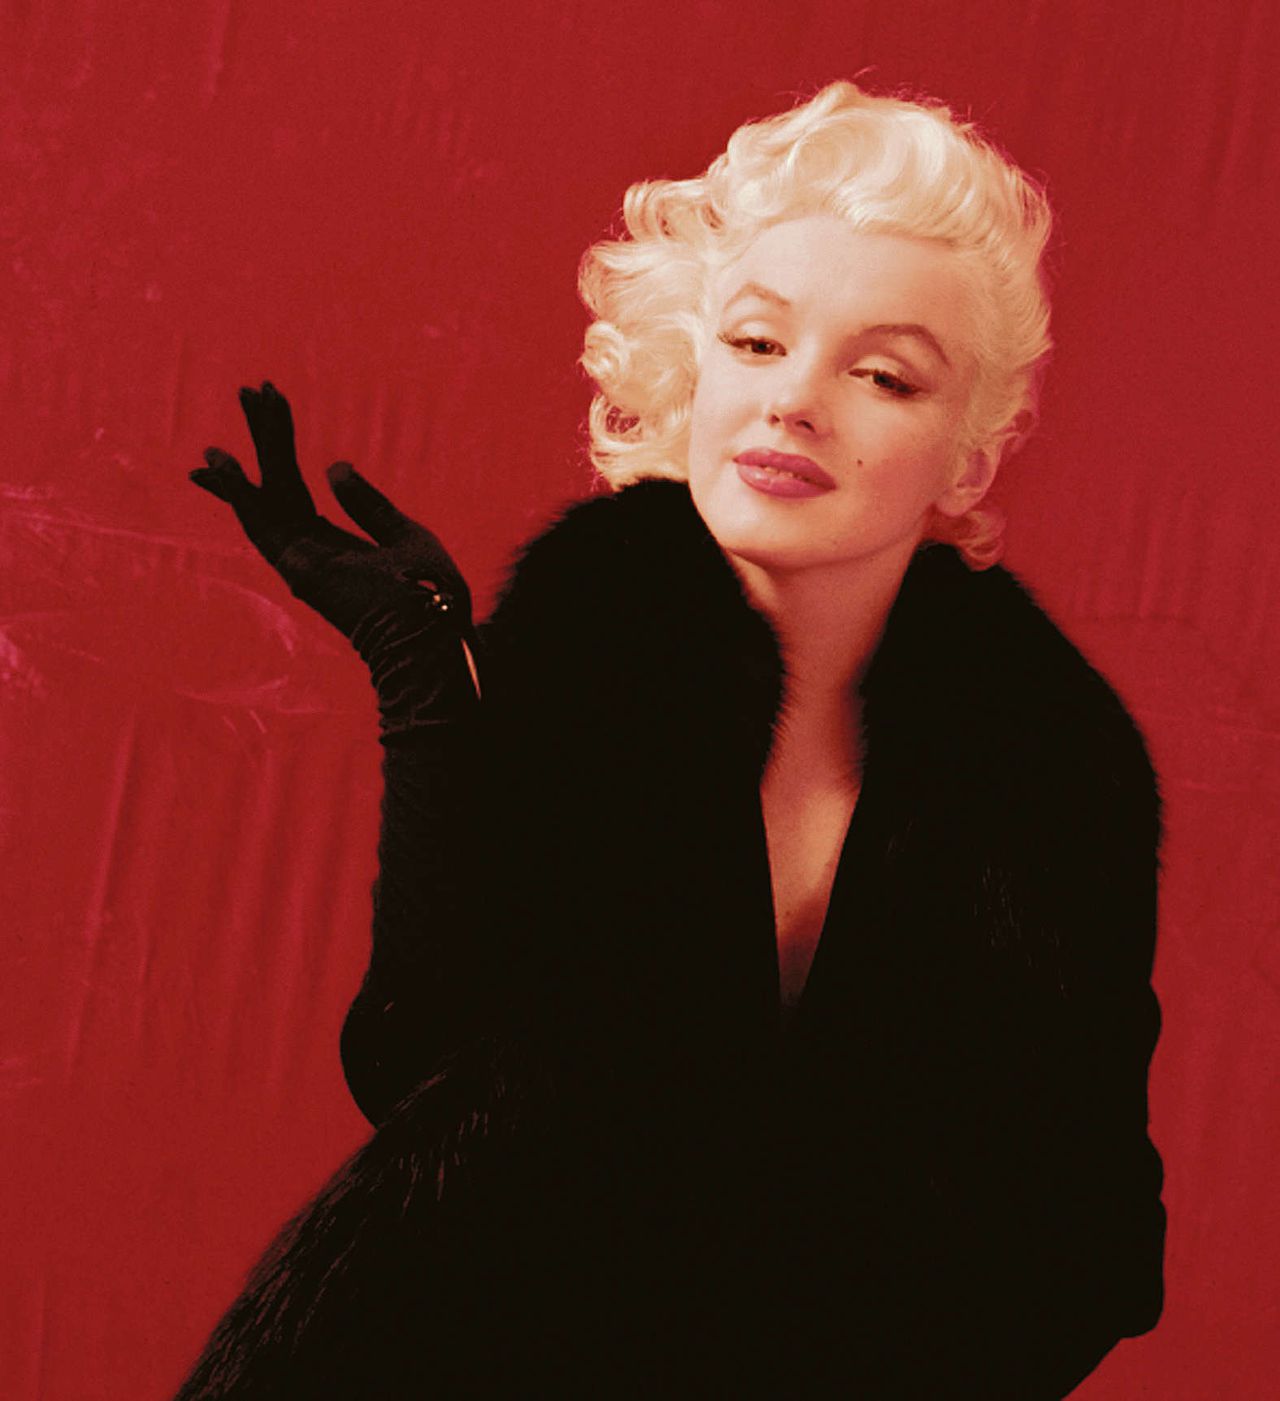 Nooit eerder gepubliceerde foto van Marilyn Monroe, in 1955 gemaakt door Milton H. Greene.